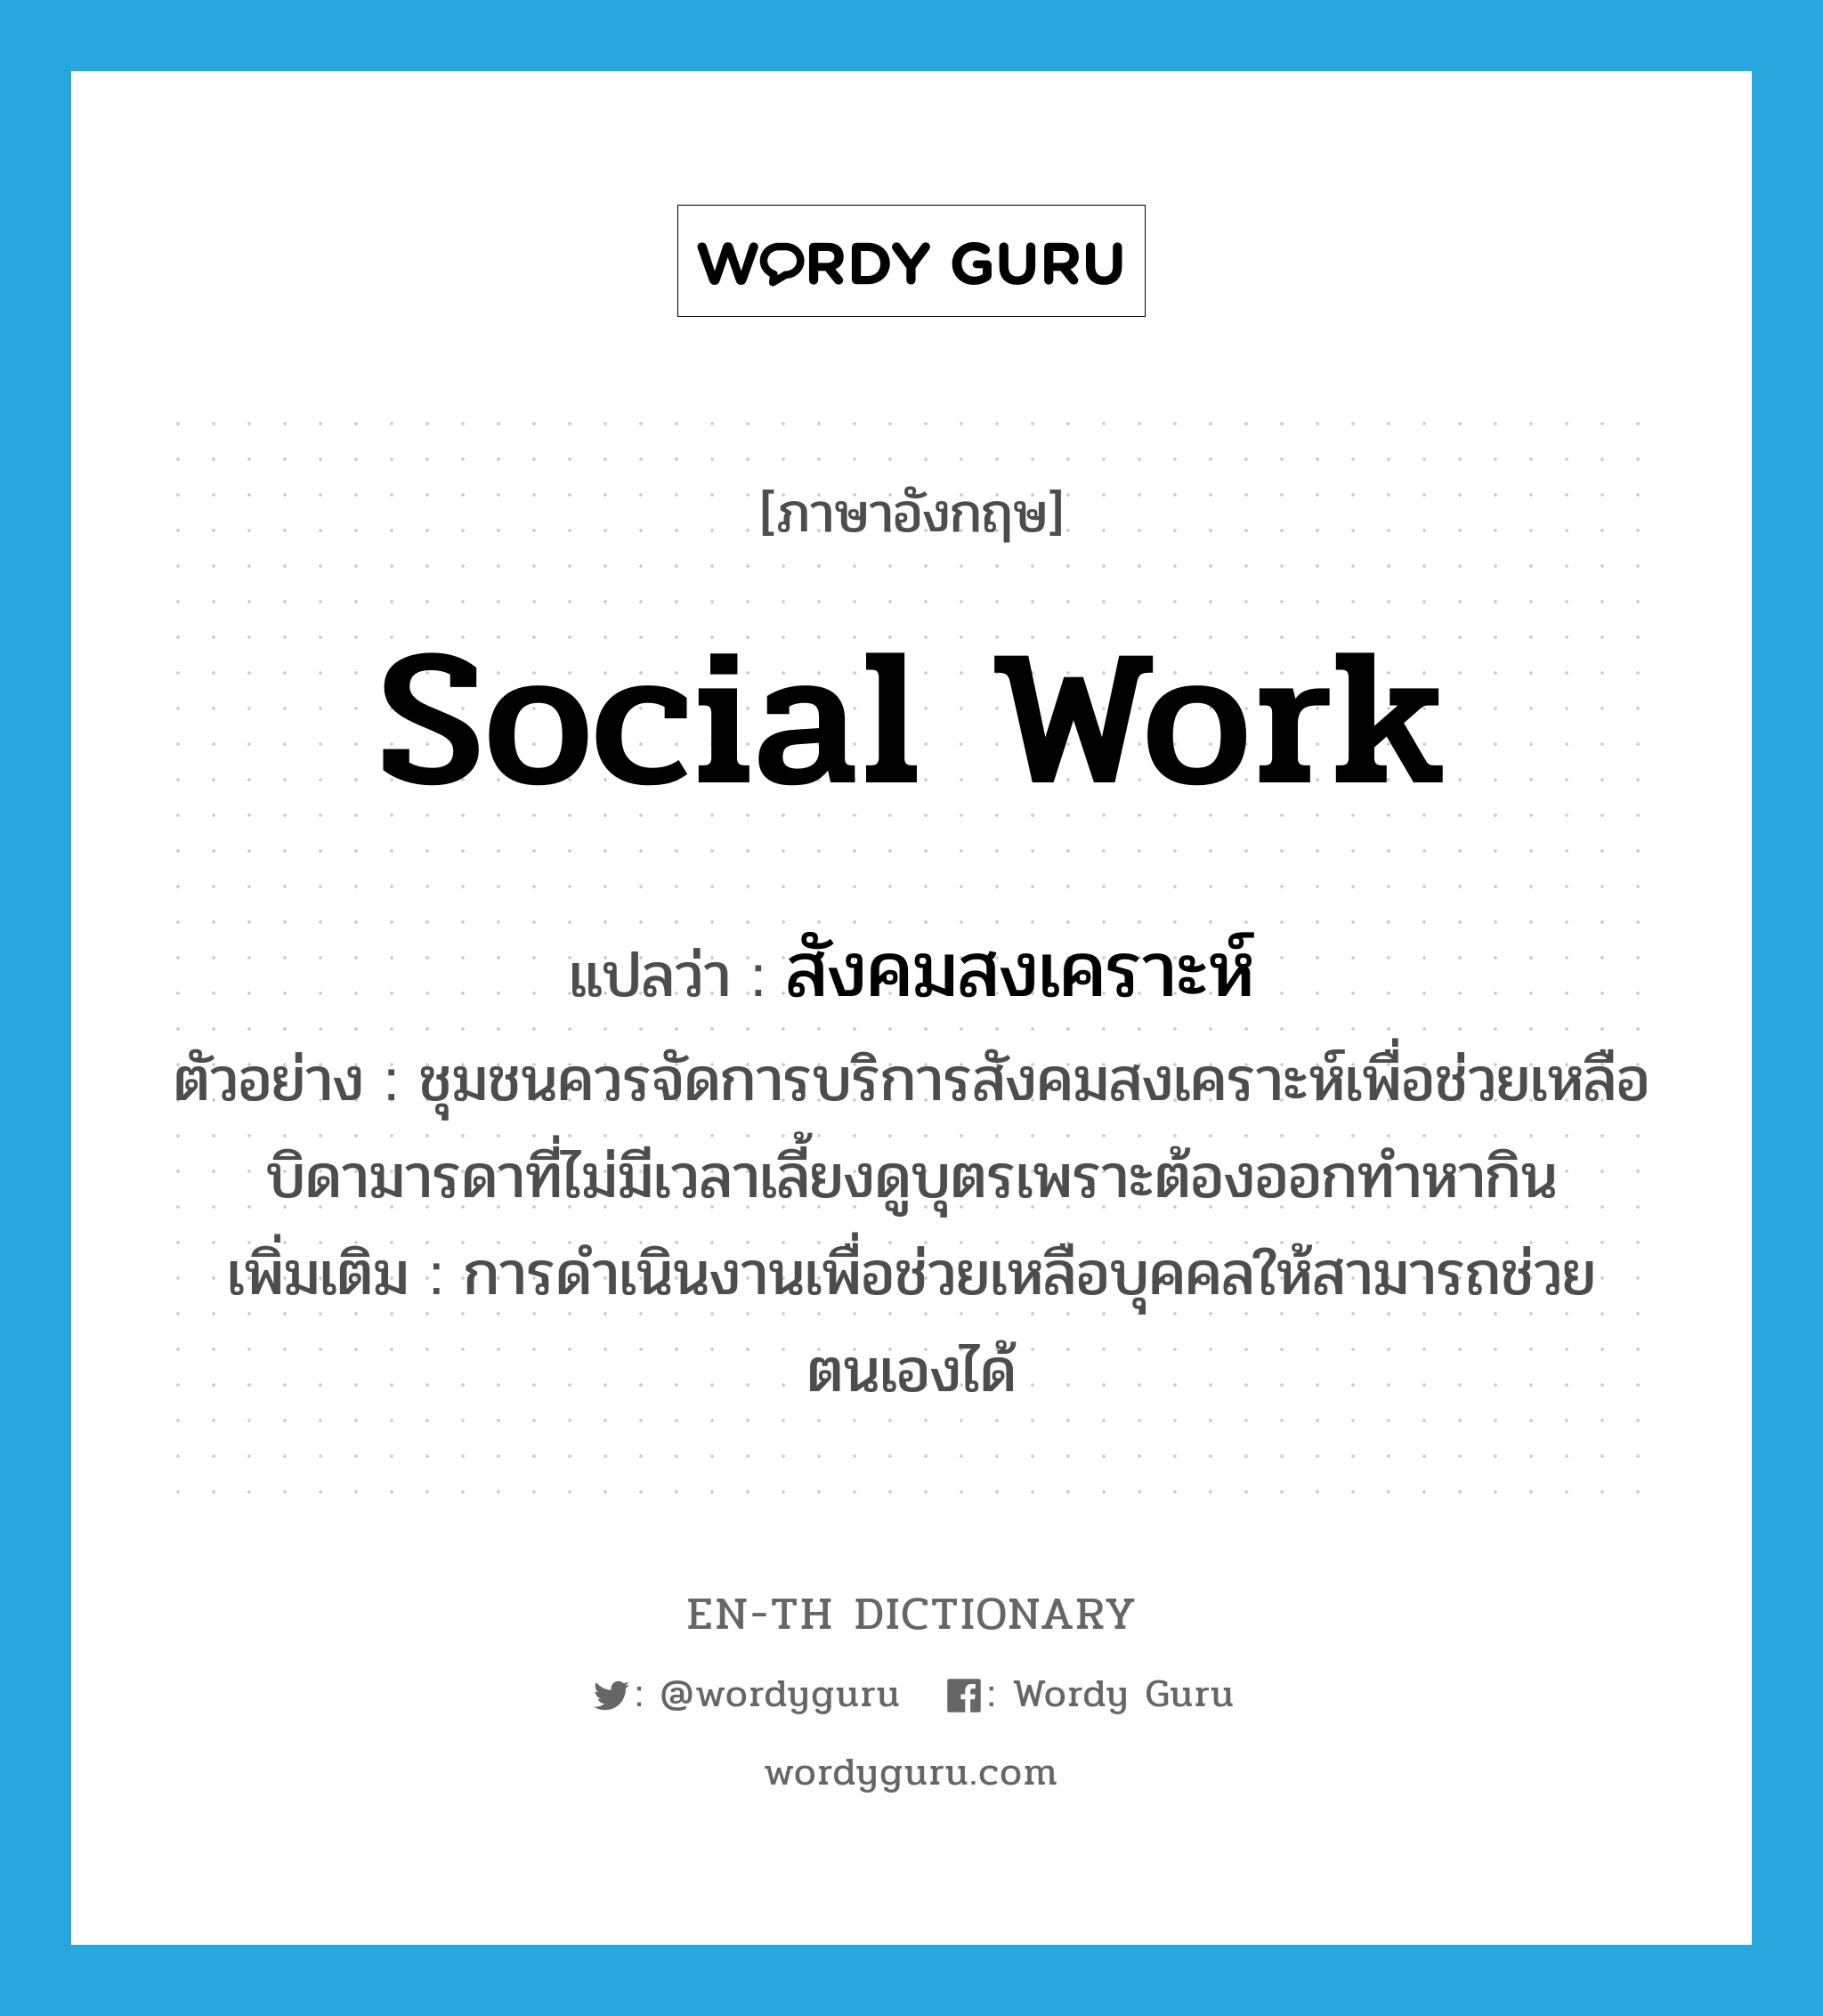 social work แปลว่า?, คำศัพท์ภาษาอังกฤษ social work แปลว่า สังคมสงเคราะห์ ประเภท N ตัวอย่าง ชุมชนควรจัดการบริการสังคมสงเคราะห์เพื่อช่วยเหลือบิดามารดาที่ไม่มีเวลาเลี้ยงดูบุตรเพราะต้องออกทำหากิน เพิ่มเติม การดำเนินงานเพื่อช่วยเหลือบุคคลให้สามารถช่วยตนเองได้ หมวด N